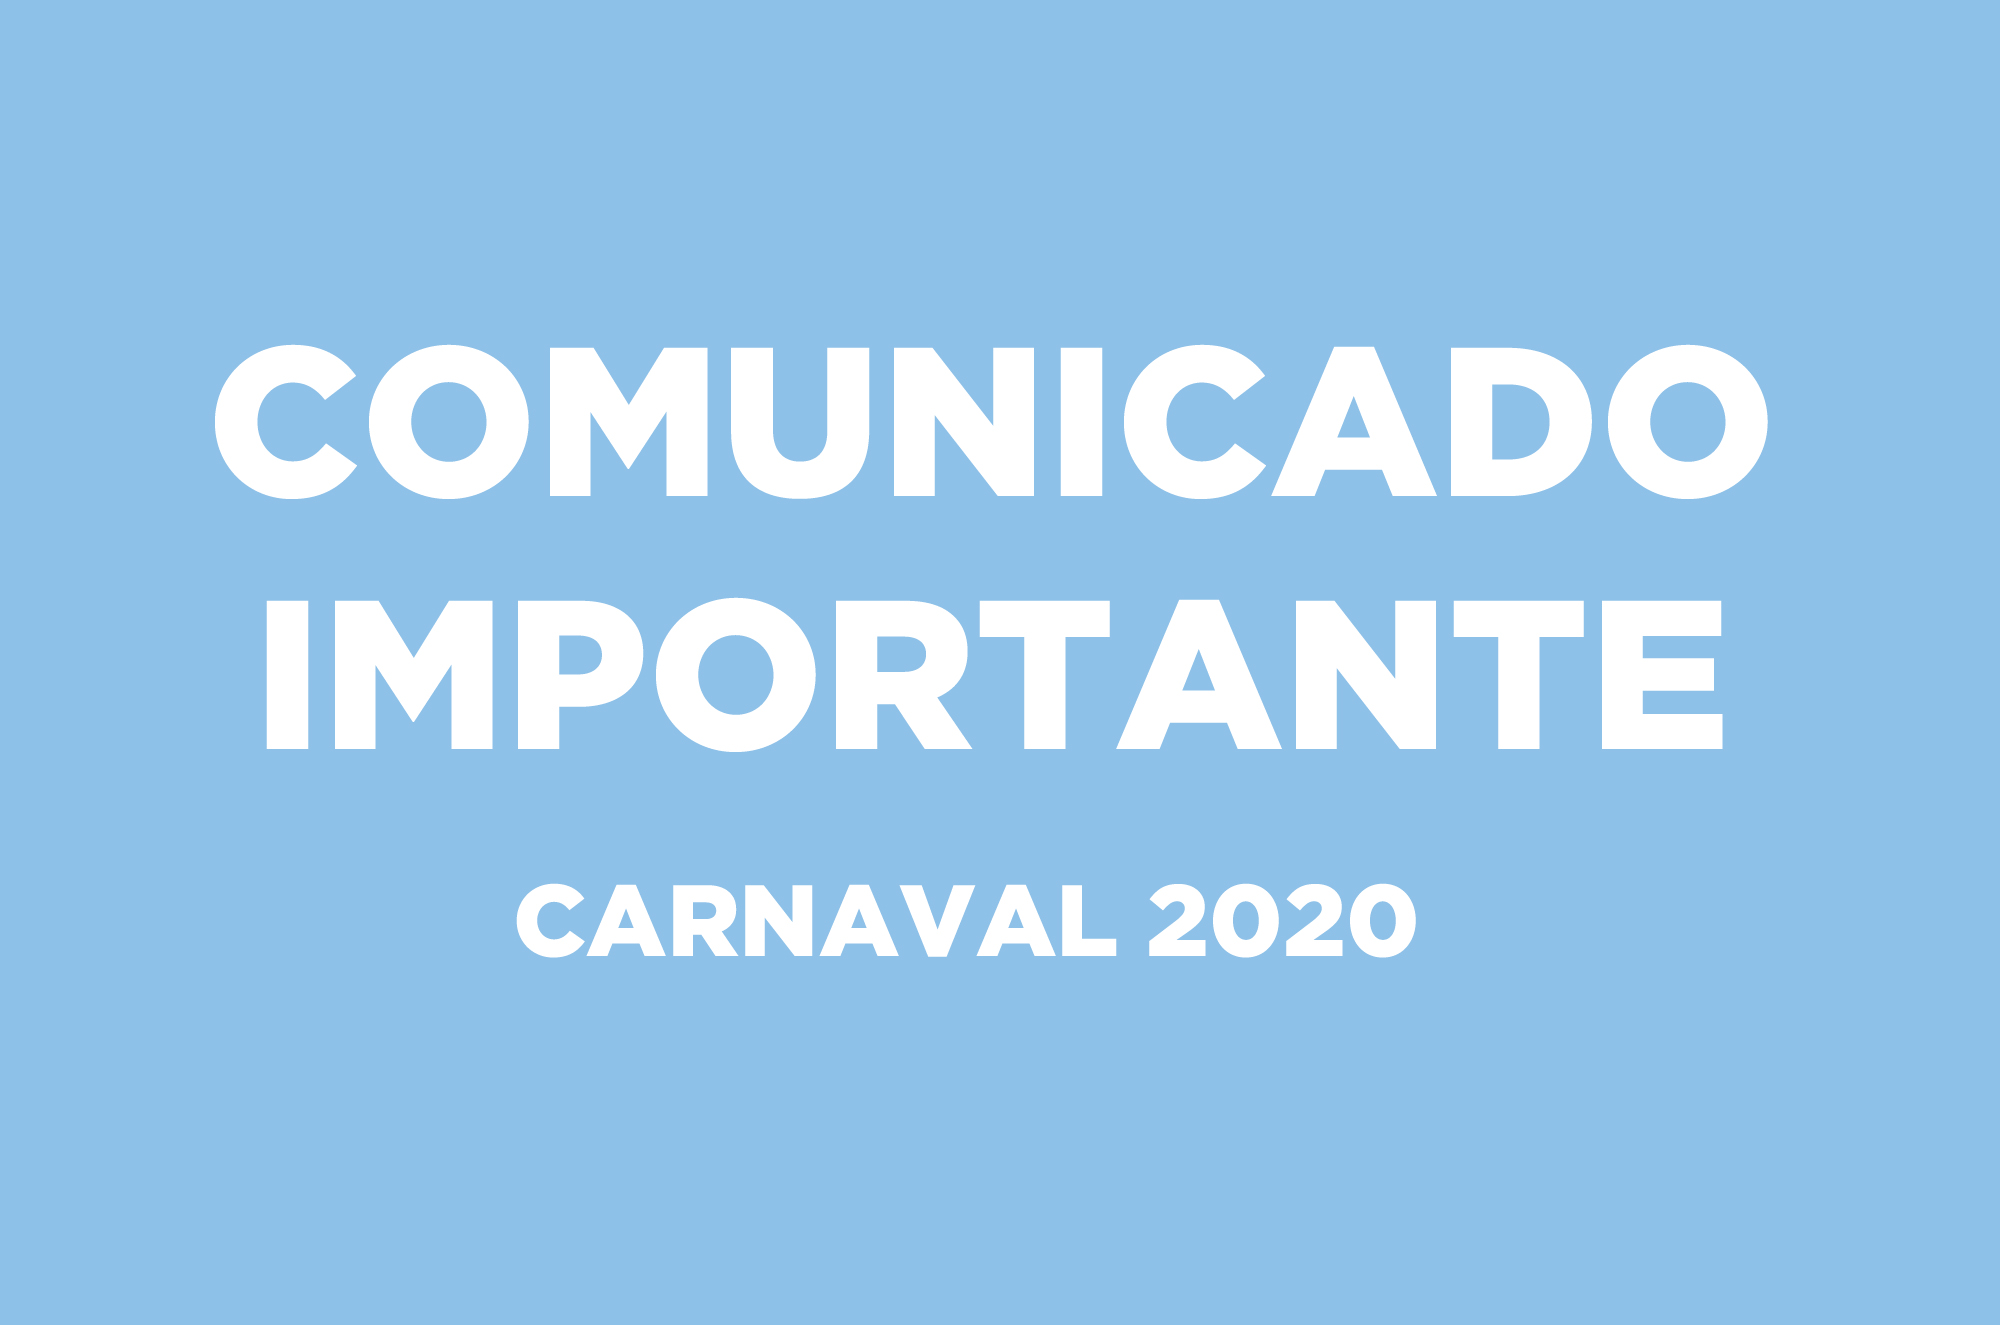 Comunicado – Carnaval 2020